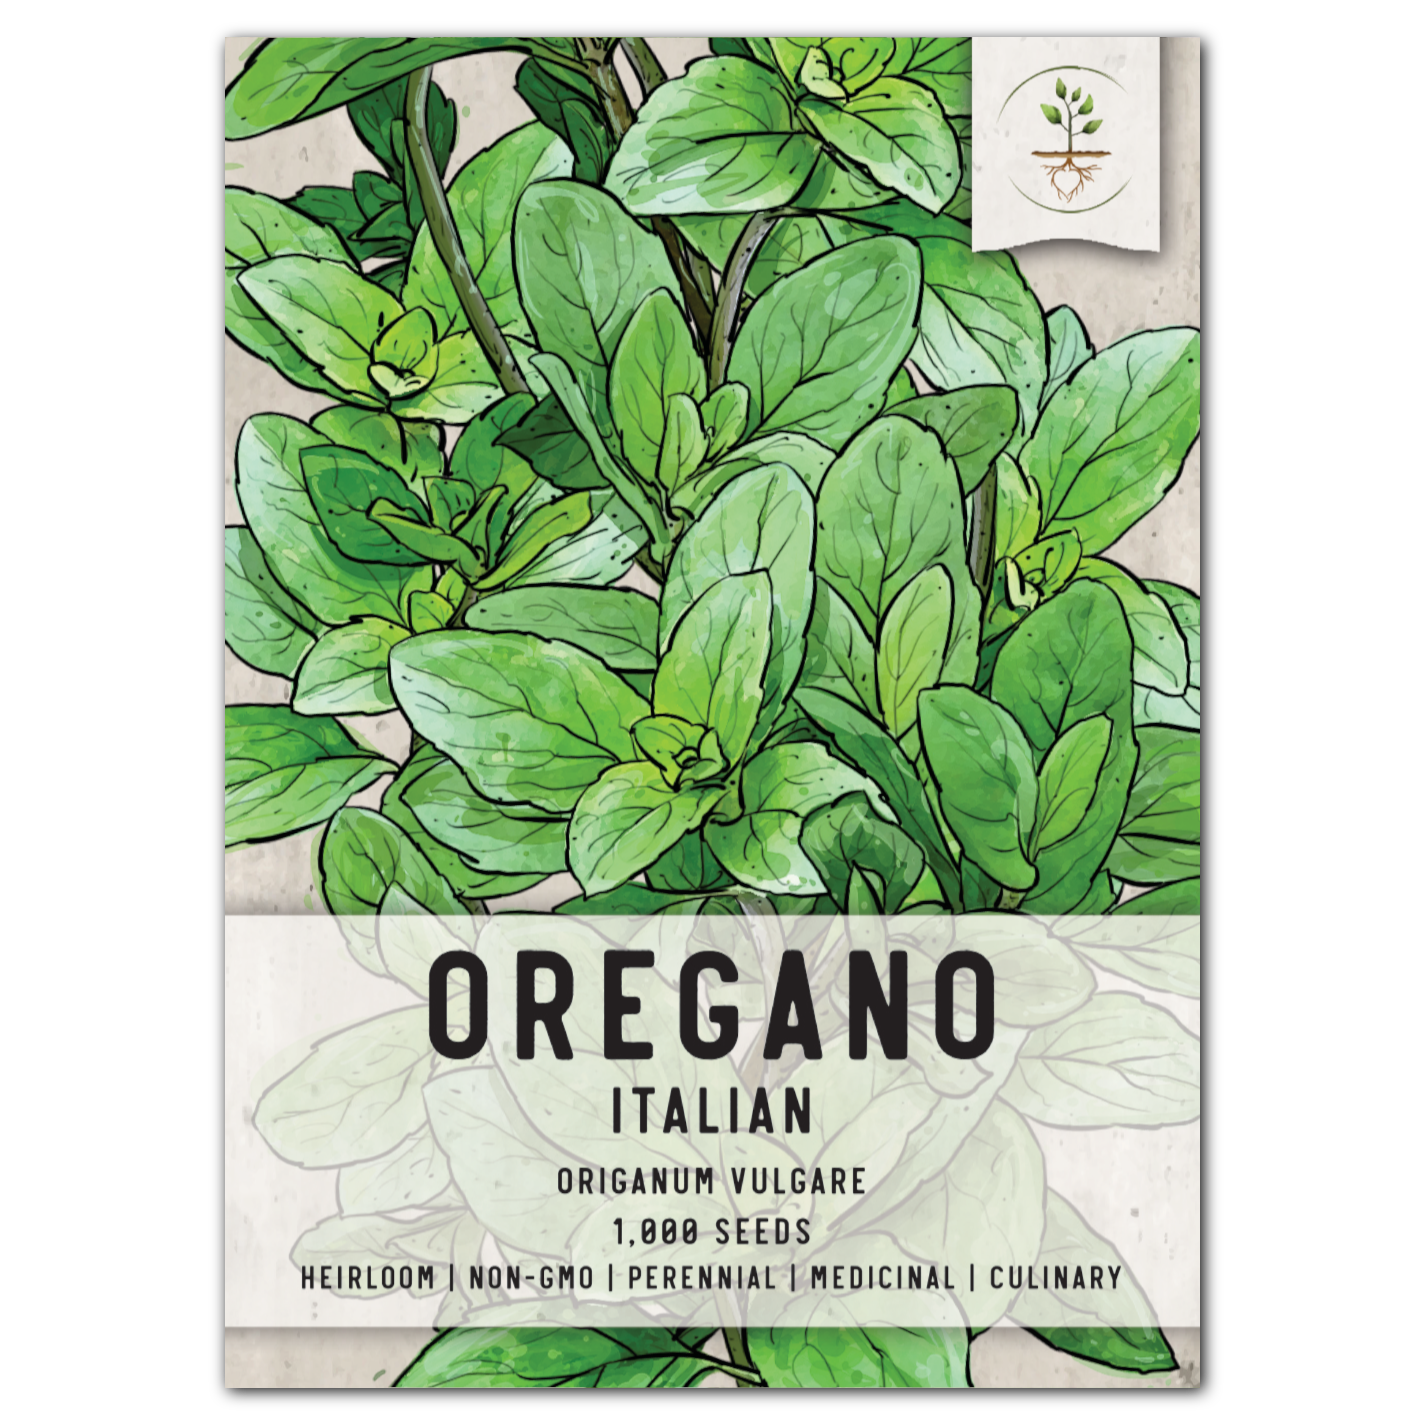 Italian Oregano (Origanum vulgare)